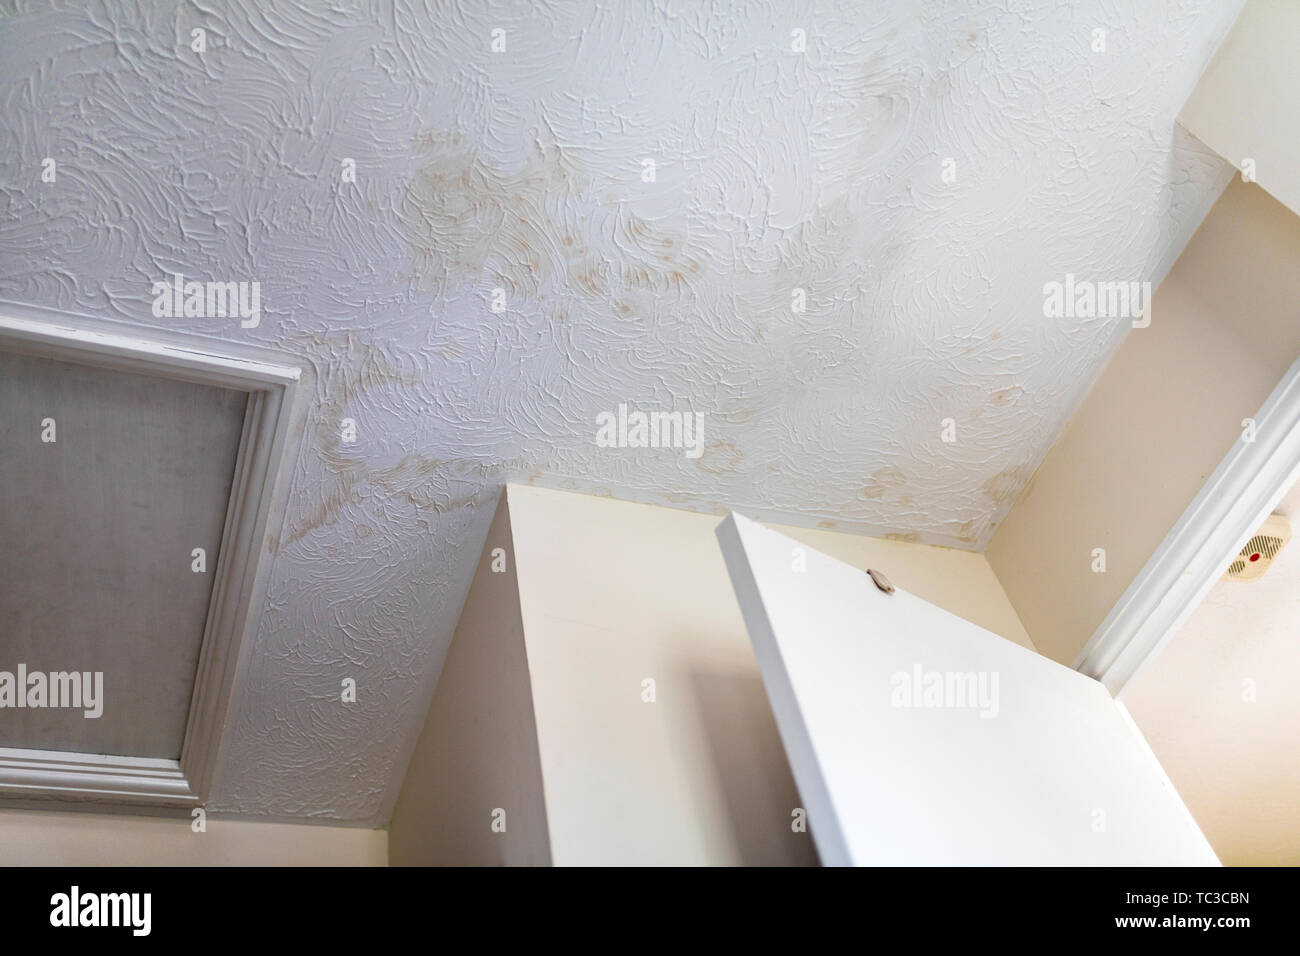 Taches sur le plafond après une fuite d'eau Banque D'Images